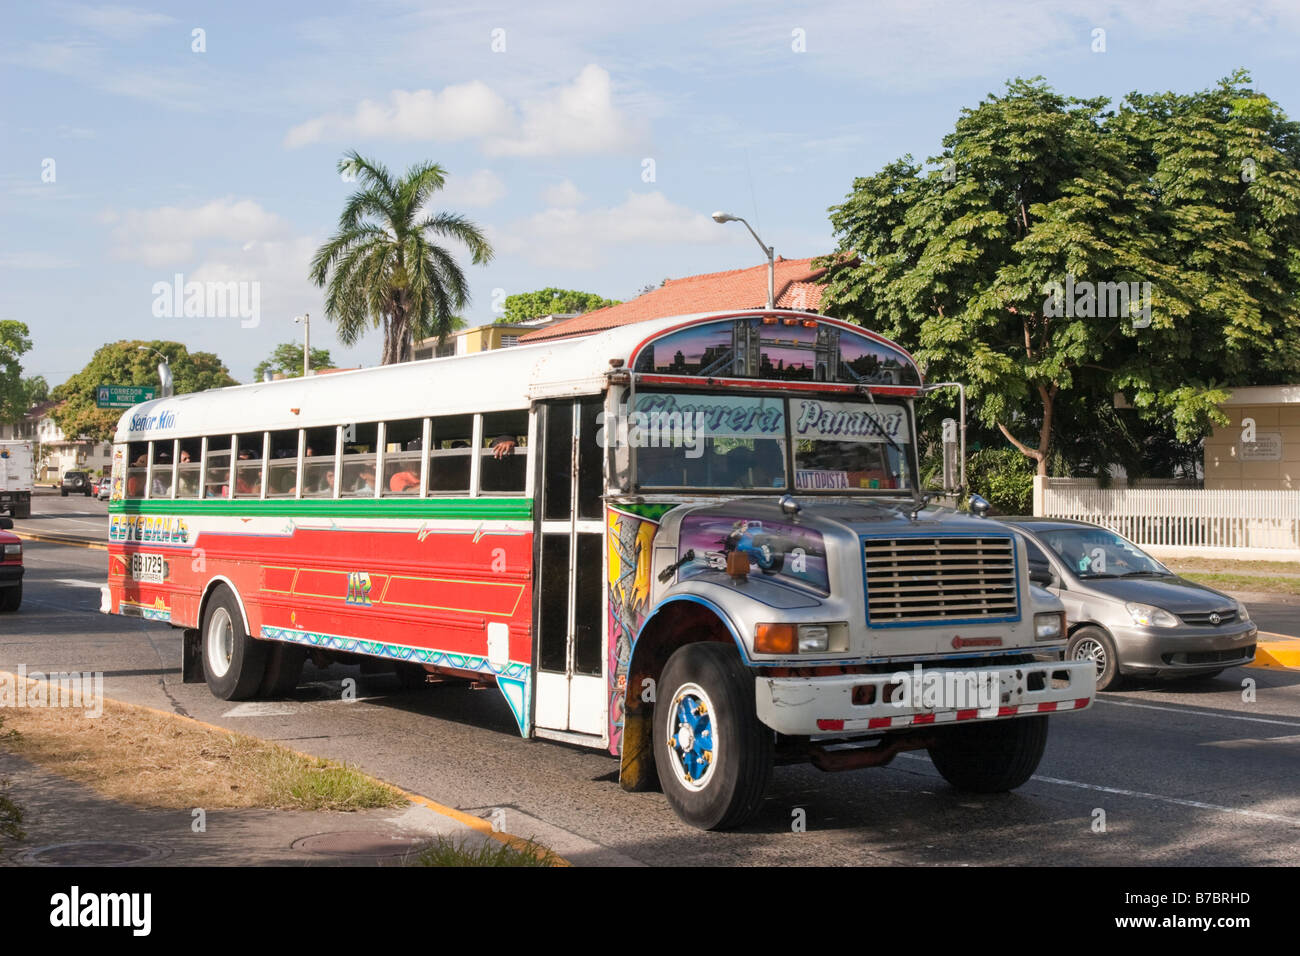 Diablo Rojo bus. Balboa, Panama, République de Panama, Amérique Centrale Banque D'Images